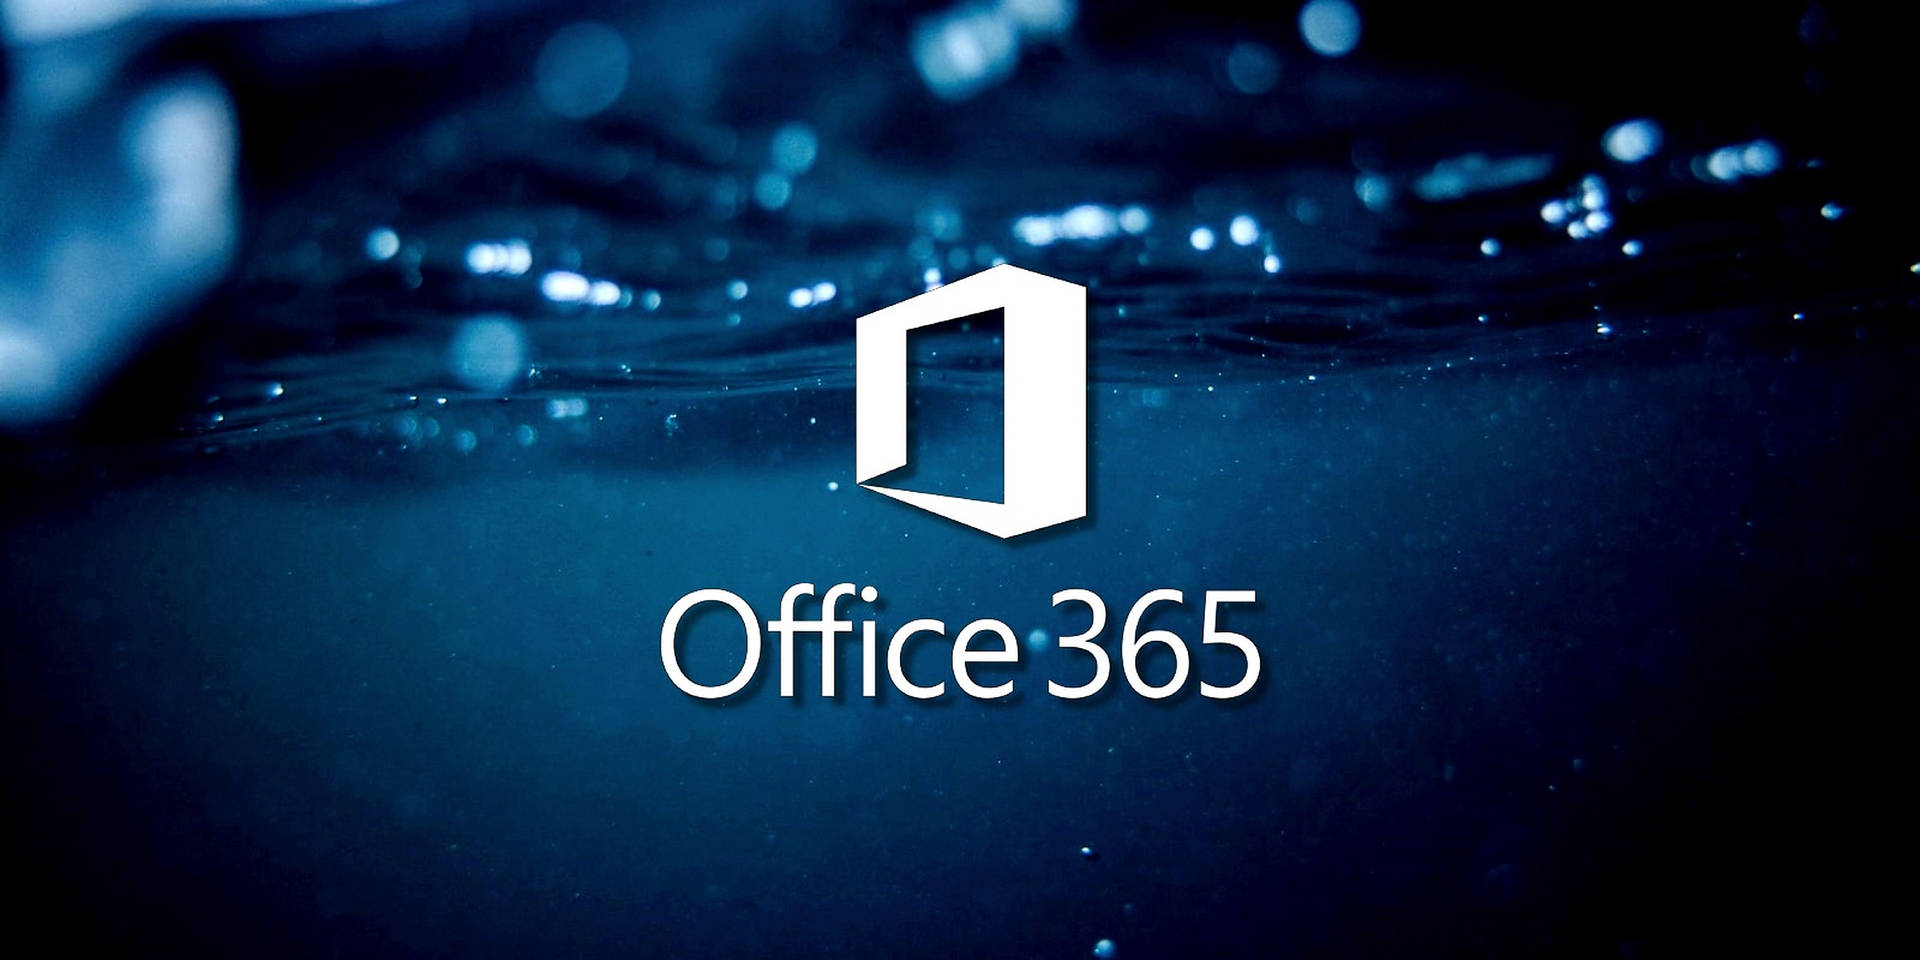 Office 365 Aqua Blue Wallpaper